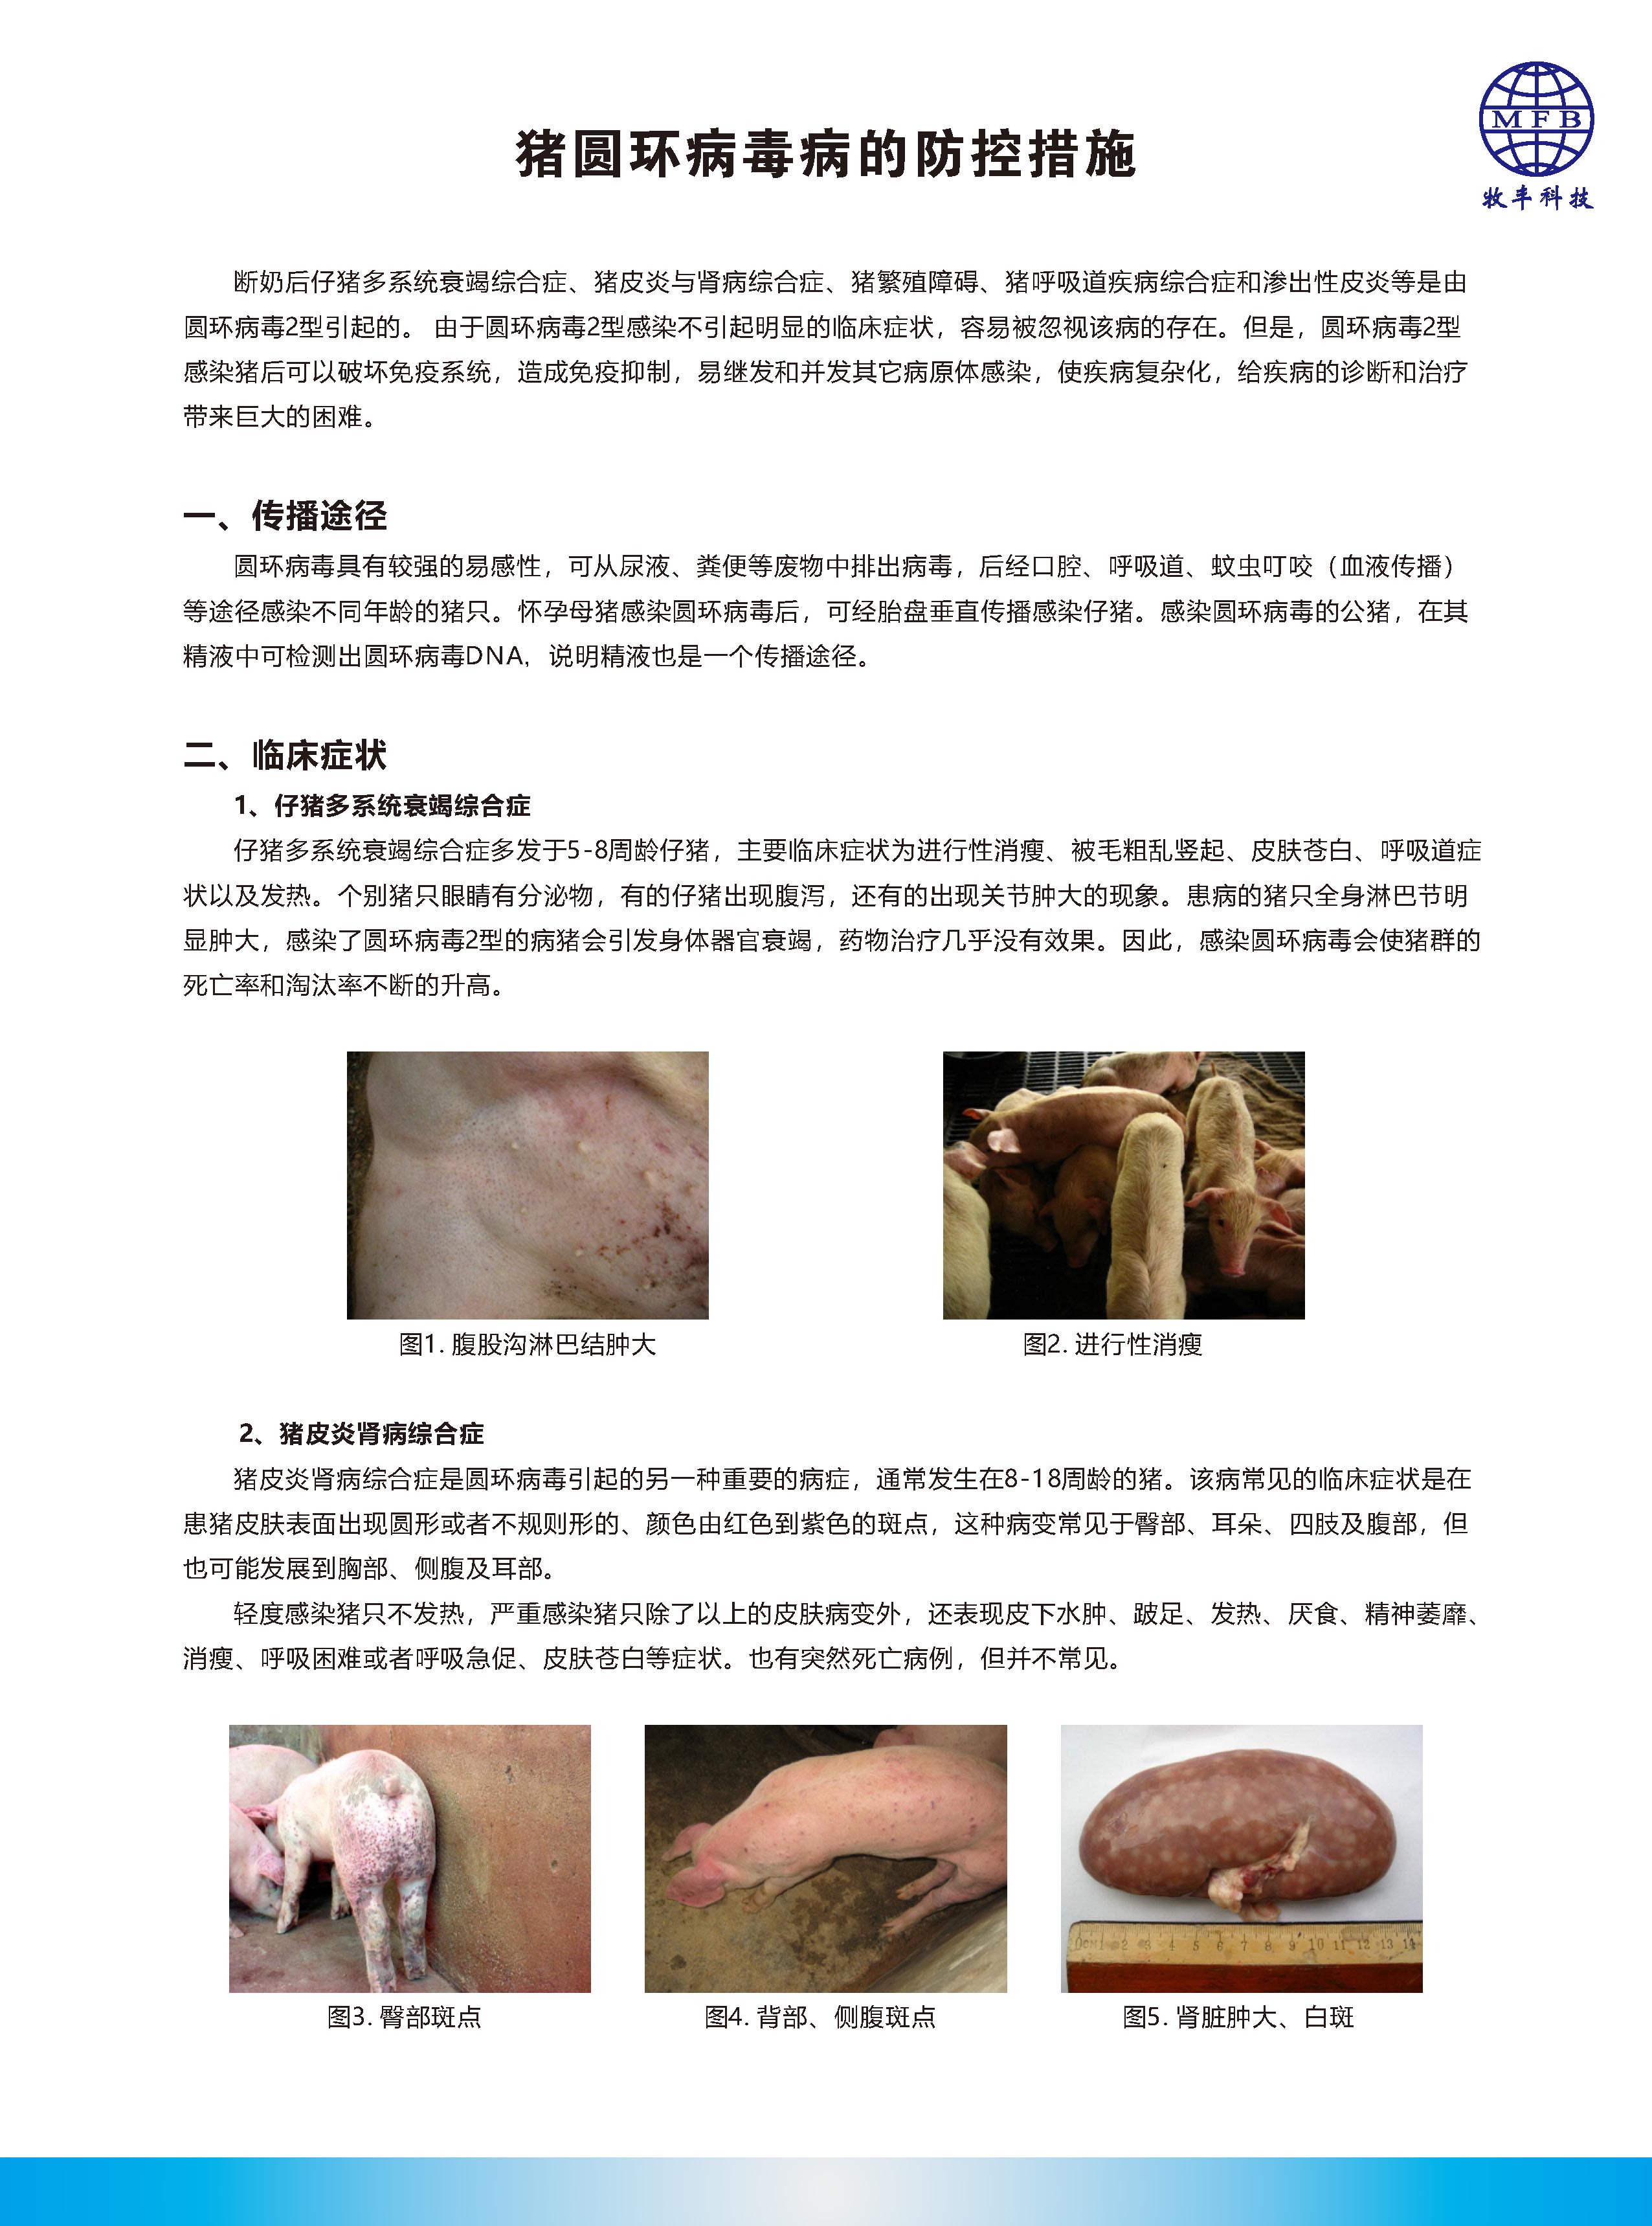 猪圆环病毒病的防控措施_页面_1.jpg